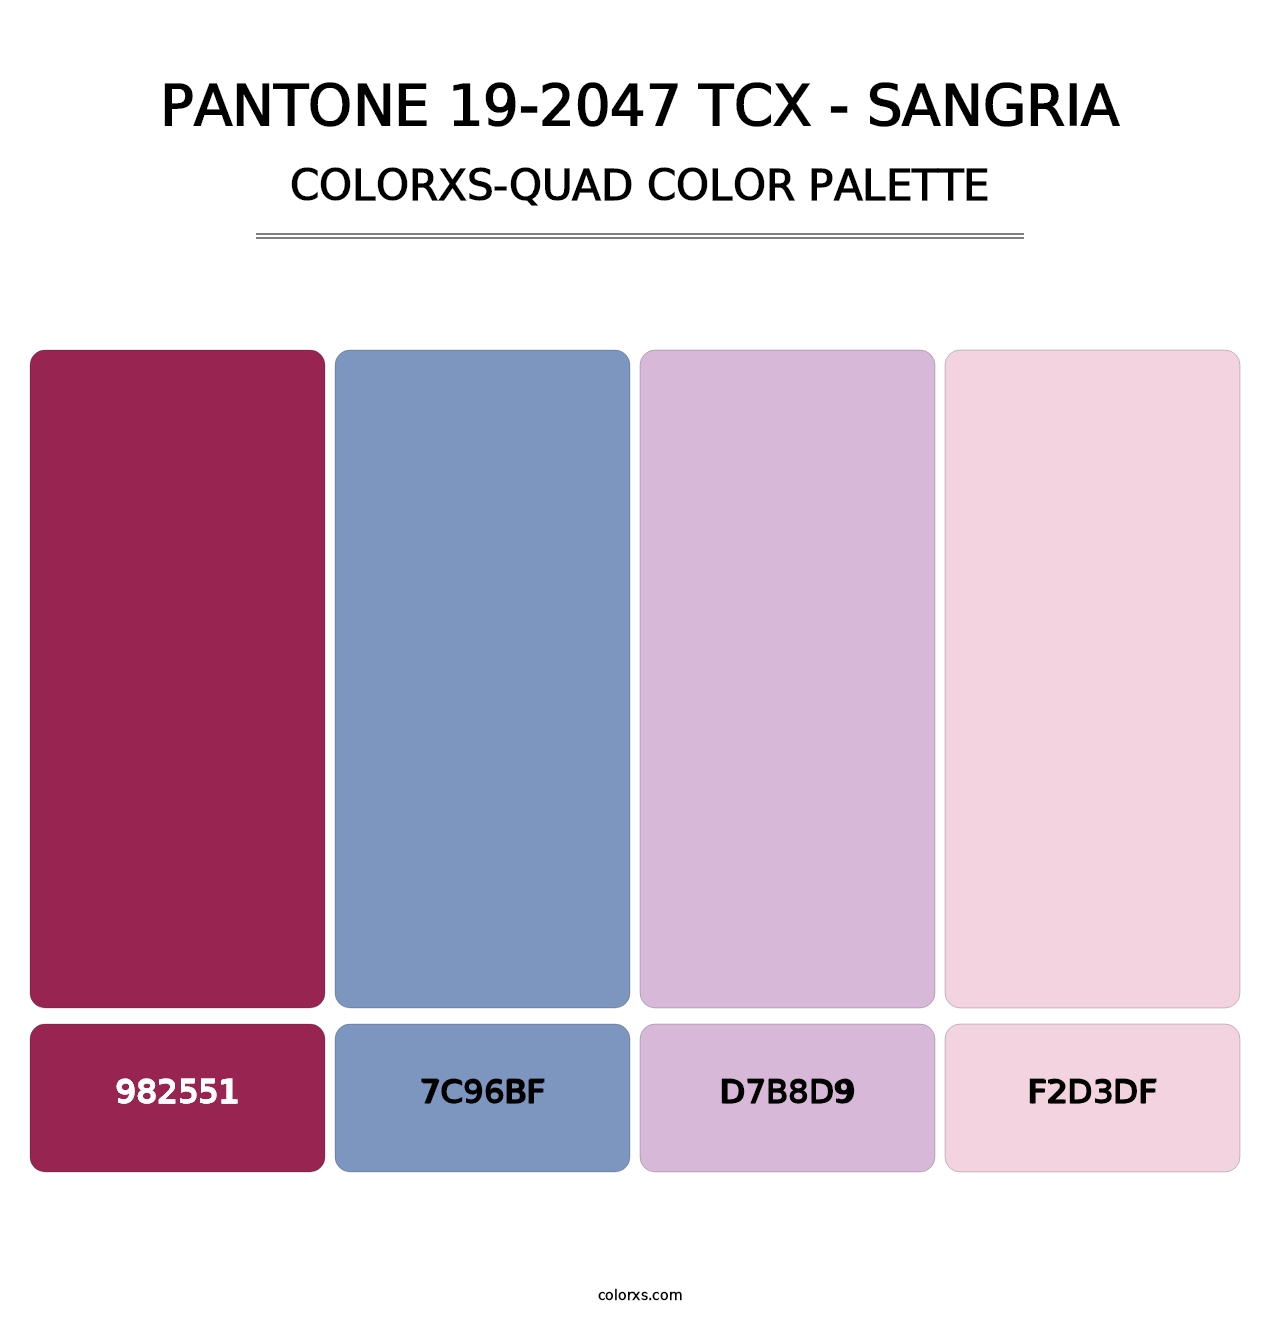 PANTONE 19-2047 TCX - Sangria - Colorxs Quad Palette